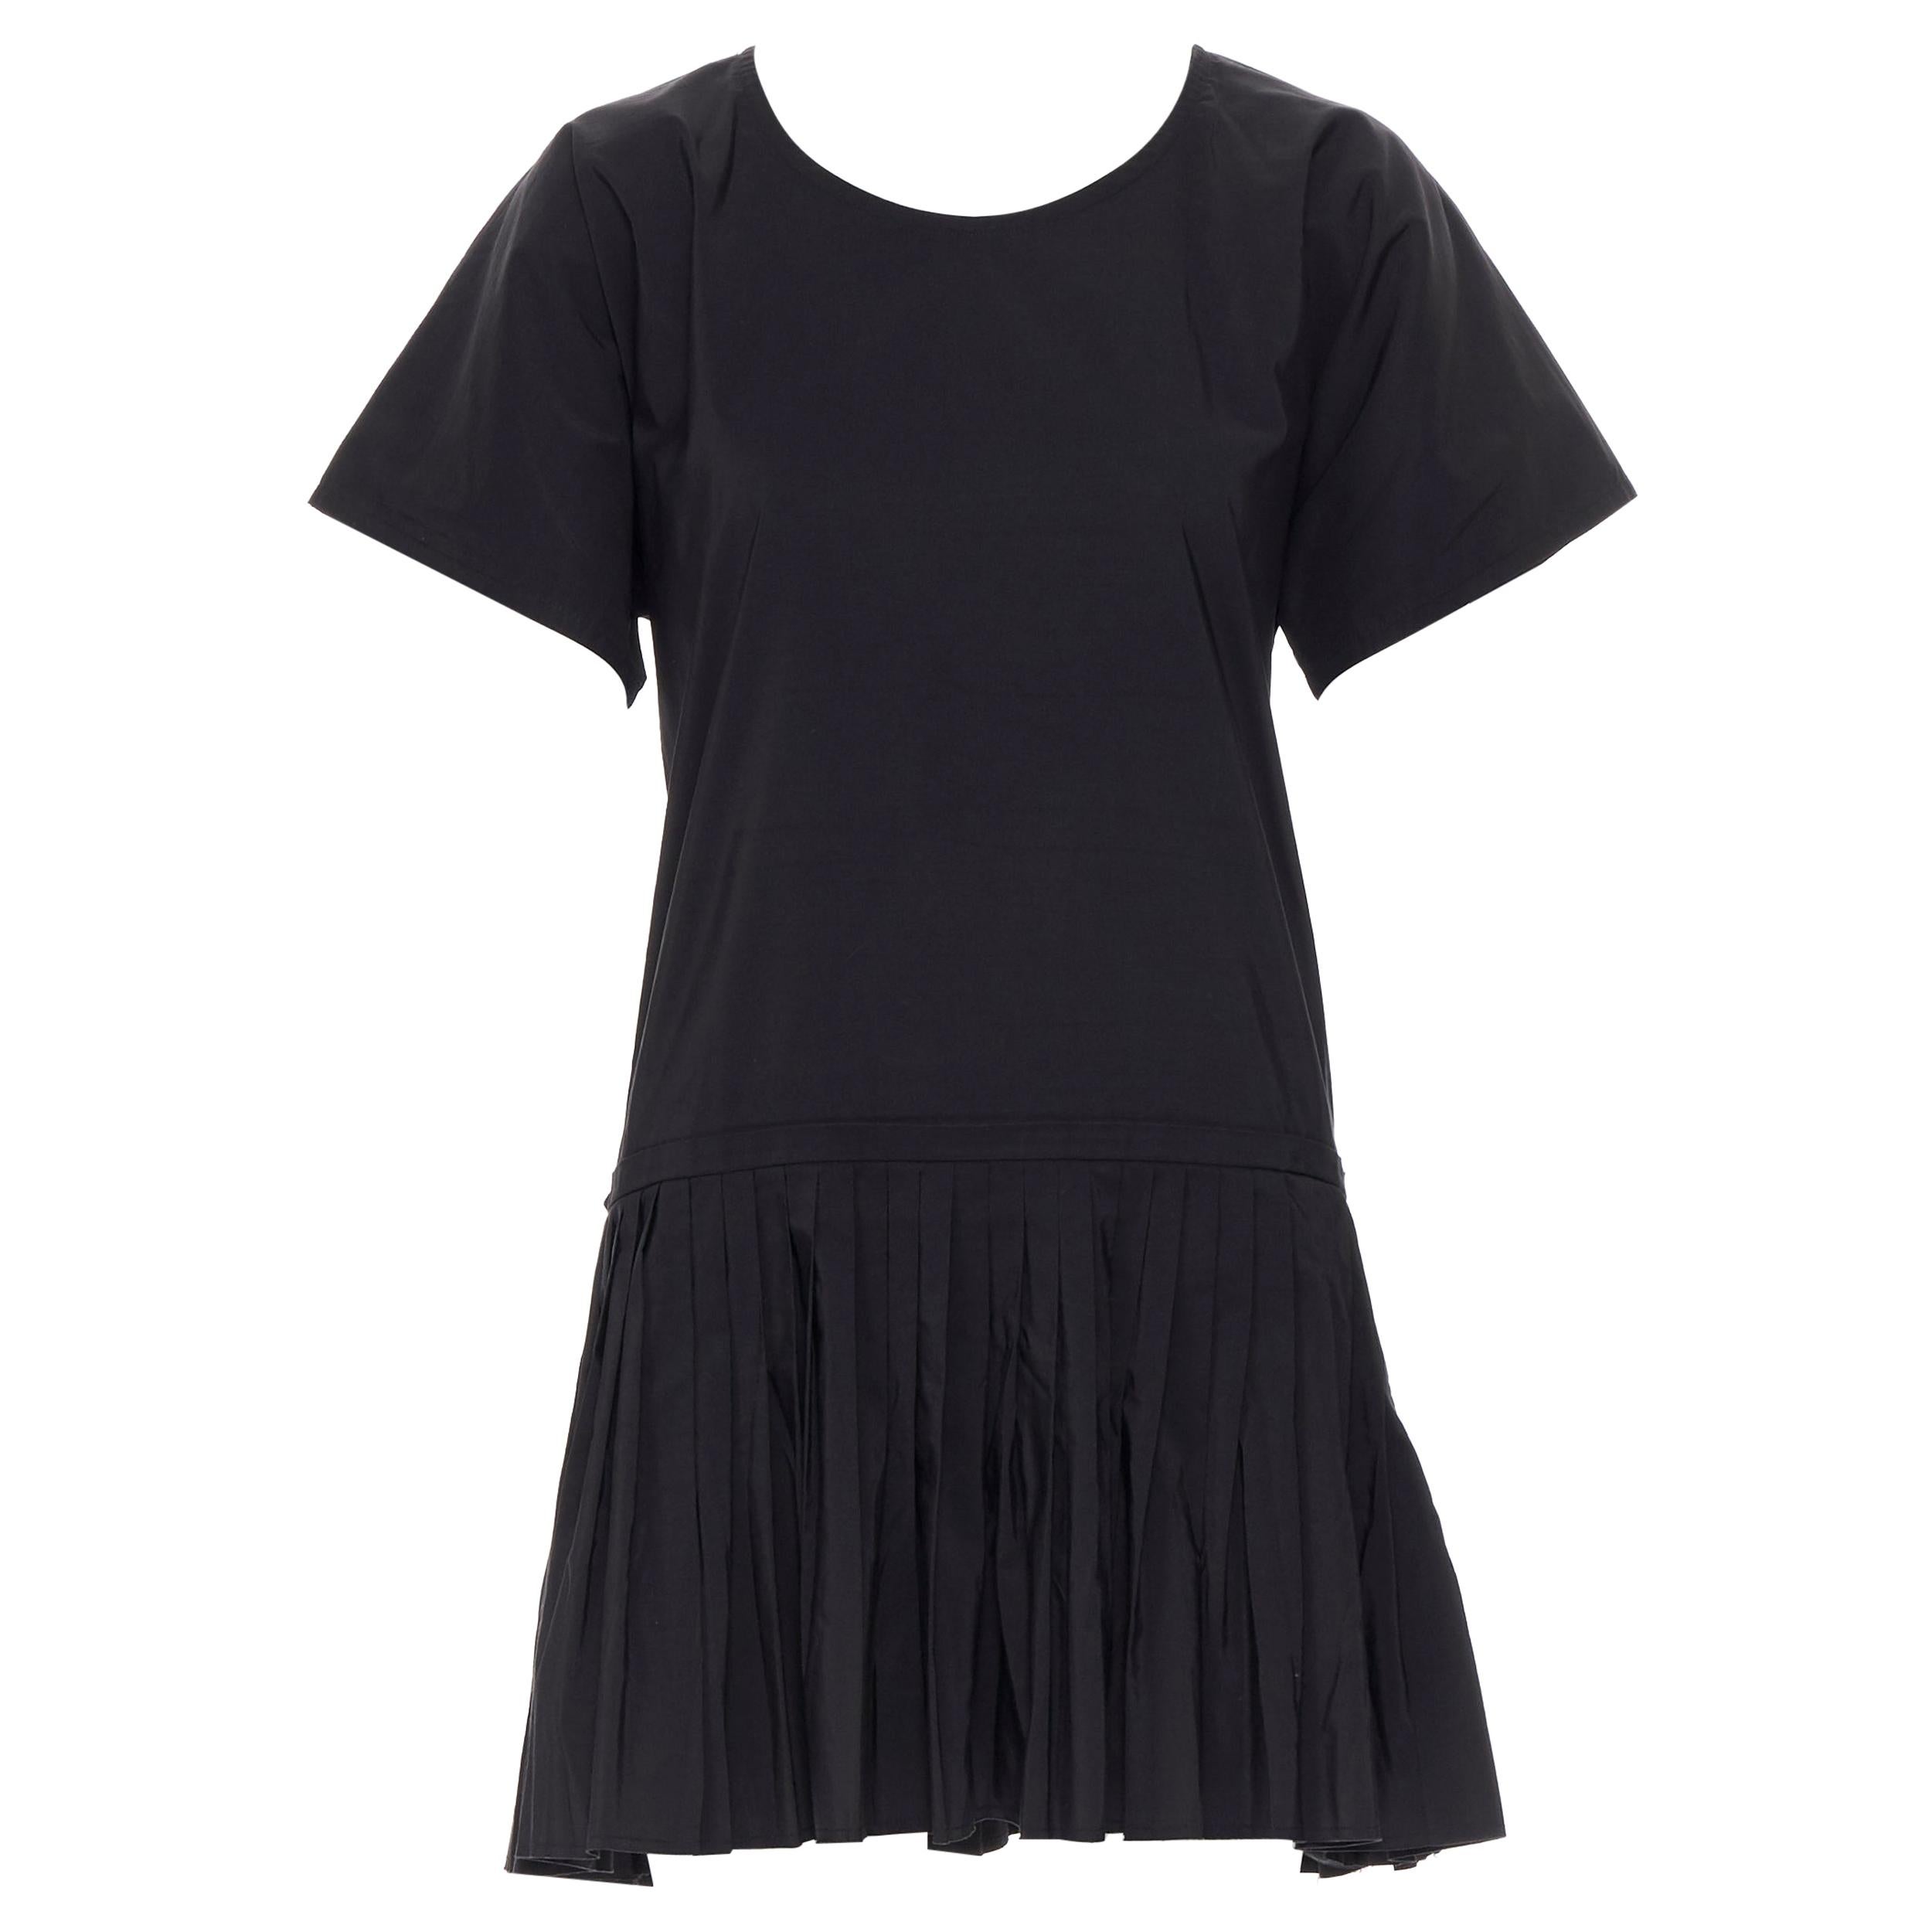 YVES SAINT LAURENT 2010 black pleated skirt side slit tunic dress EU39 / 15.5